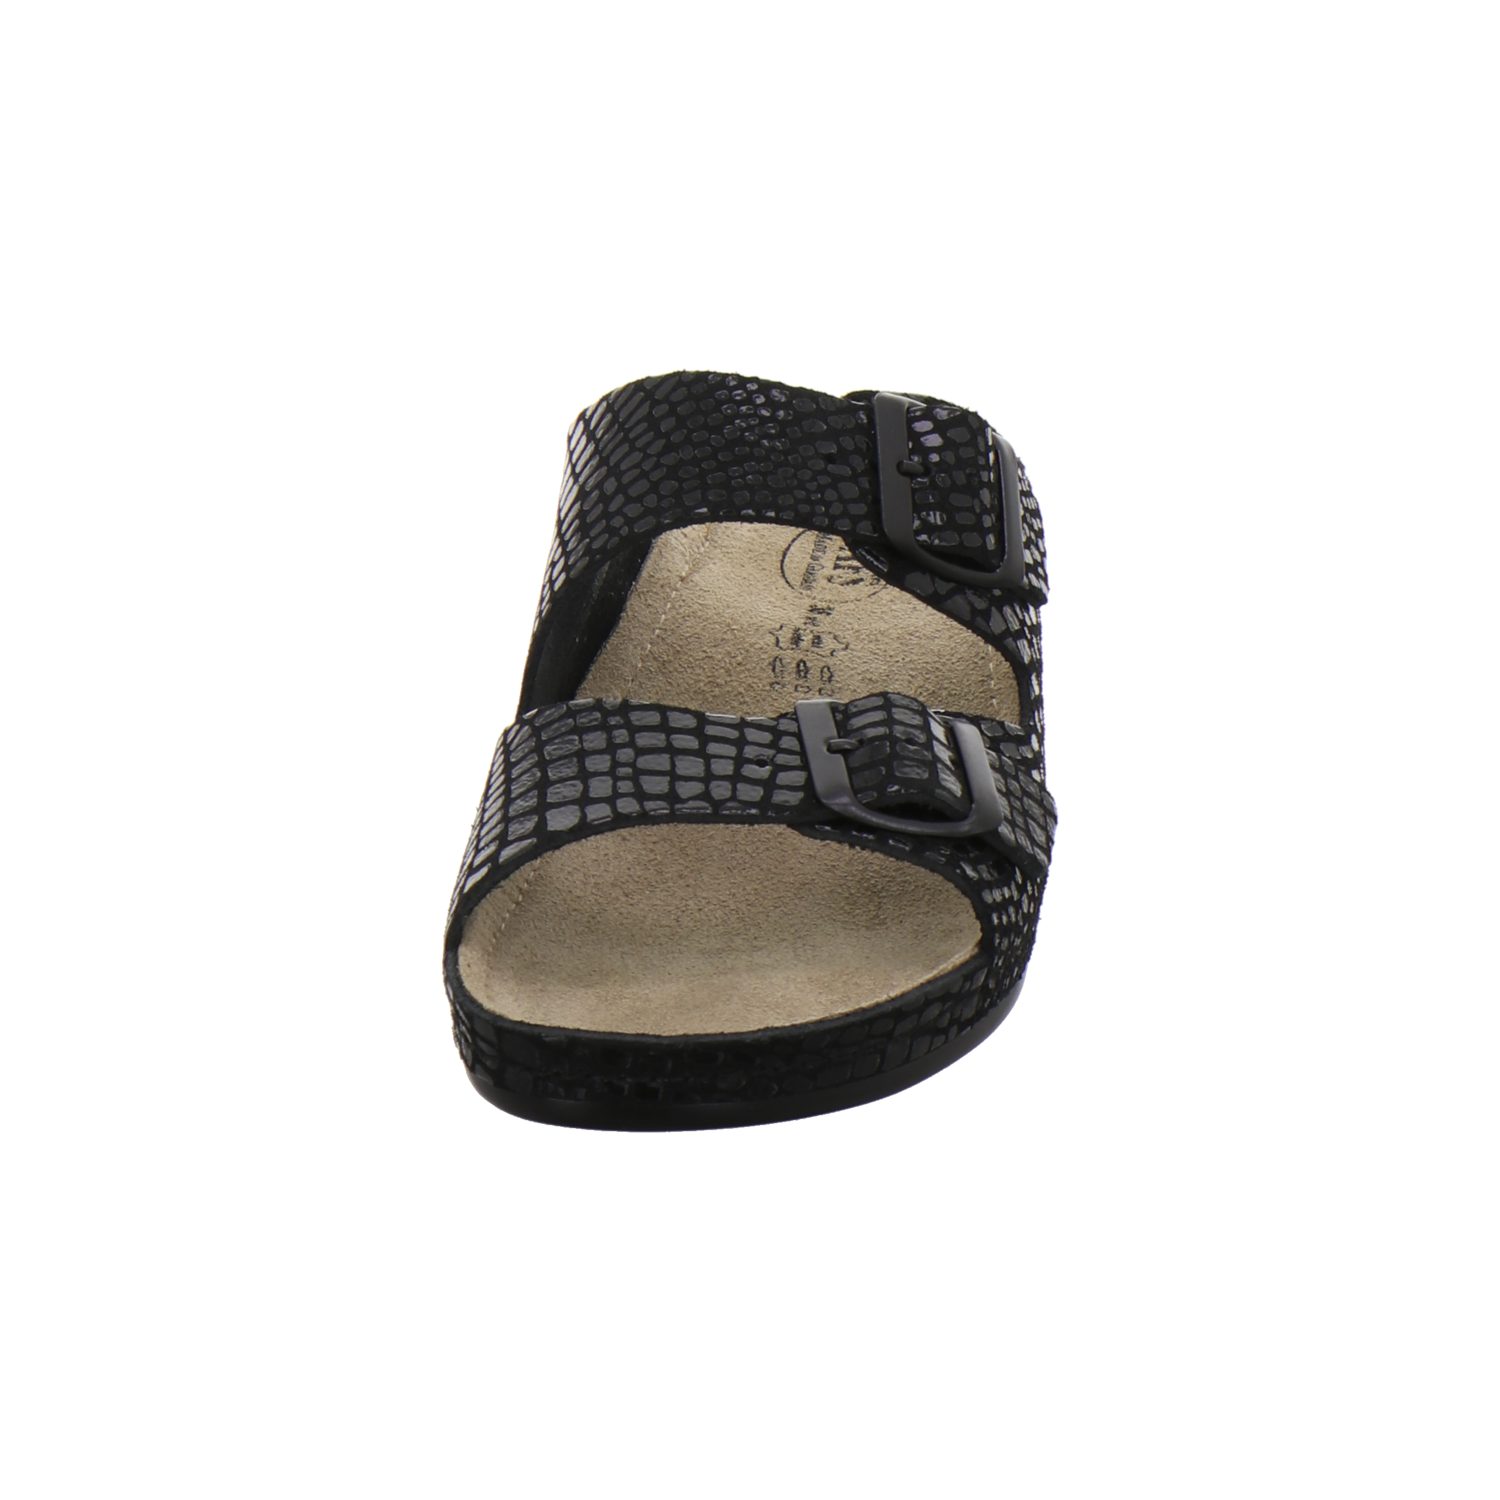 Made Absatz, AFS-Schuhe Germany Keilpantolette Damen für schwarz-crocco mit in Leder aus 2099